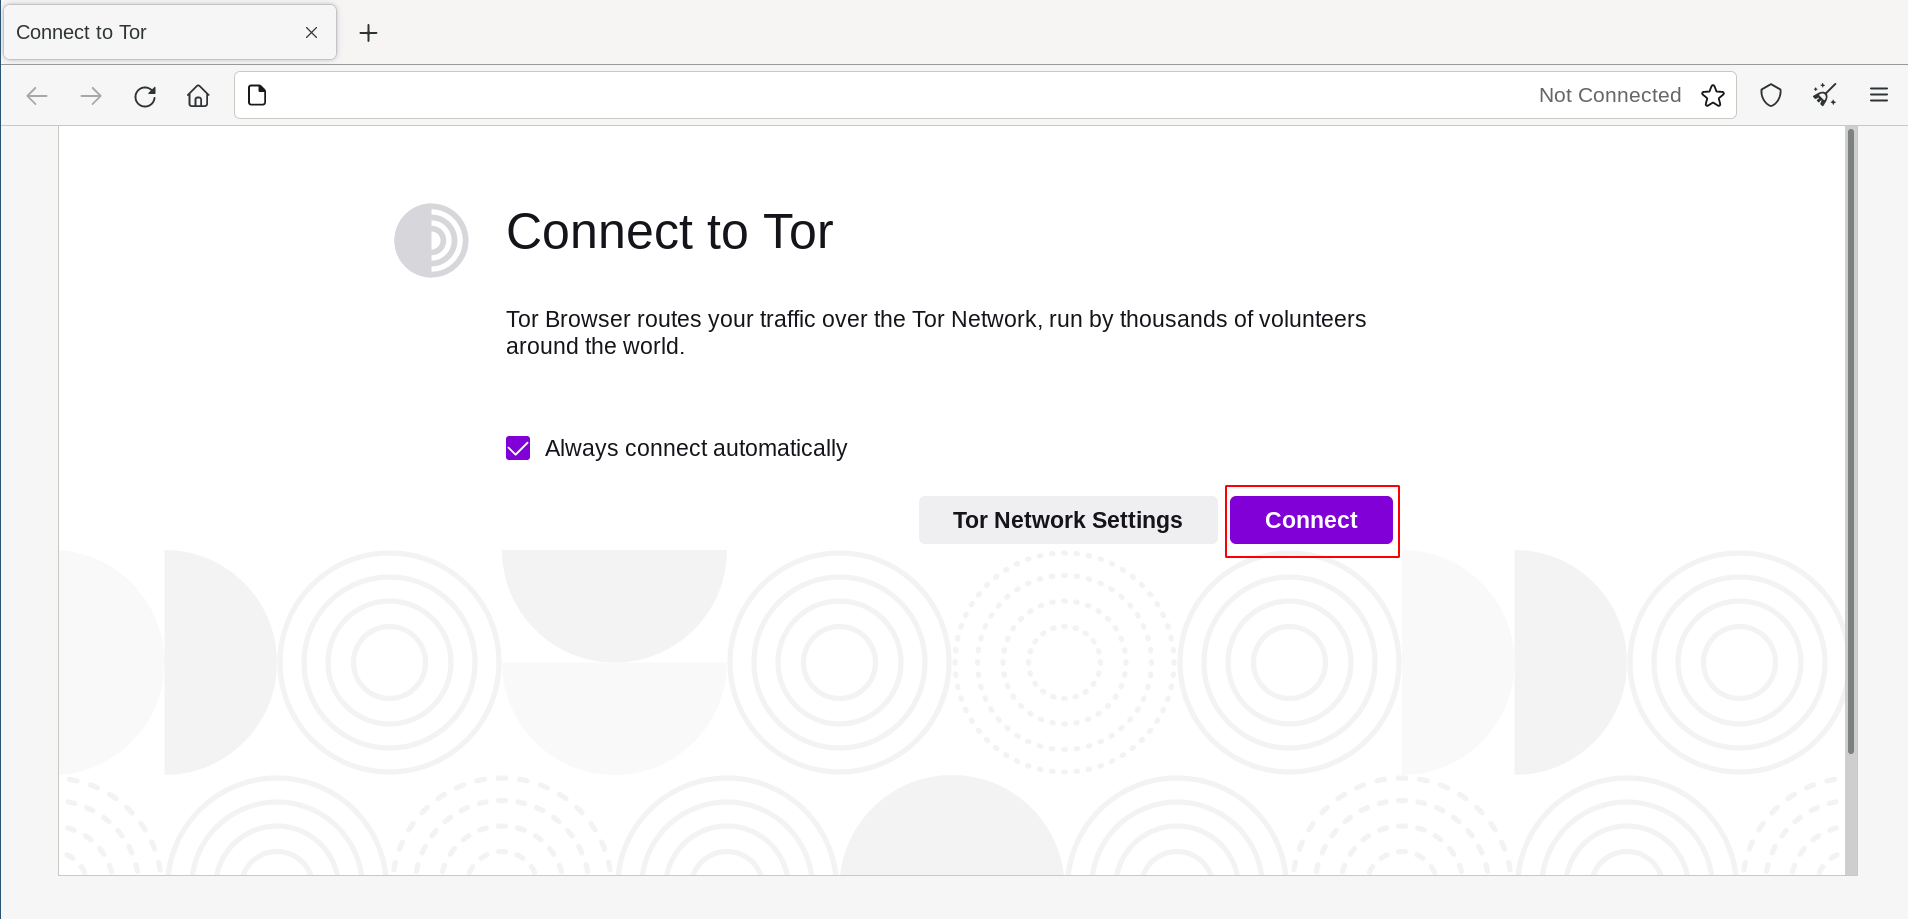 Klik 'Connect' untuk tersambung ke Tor.